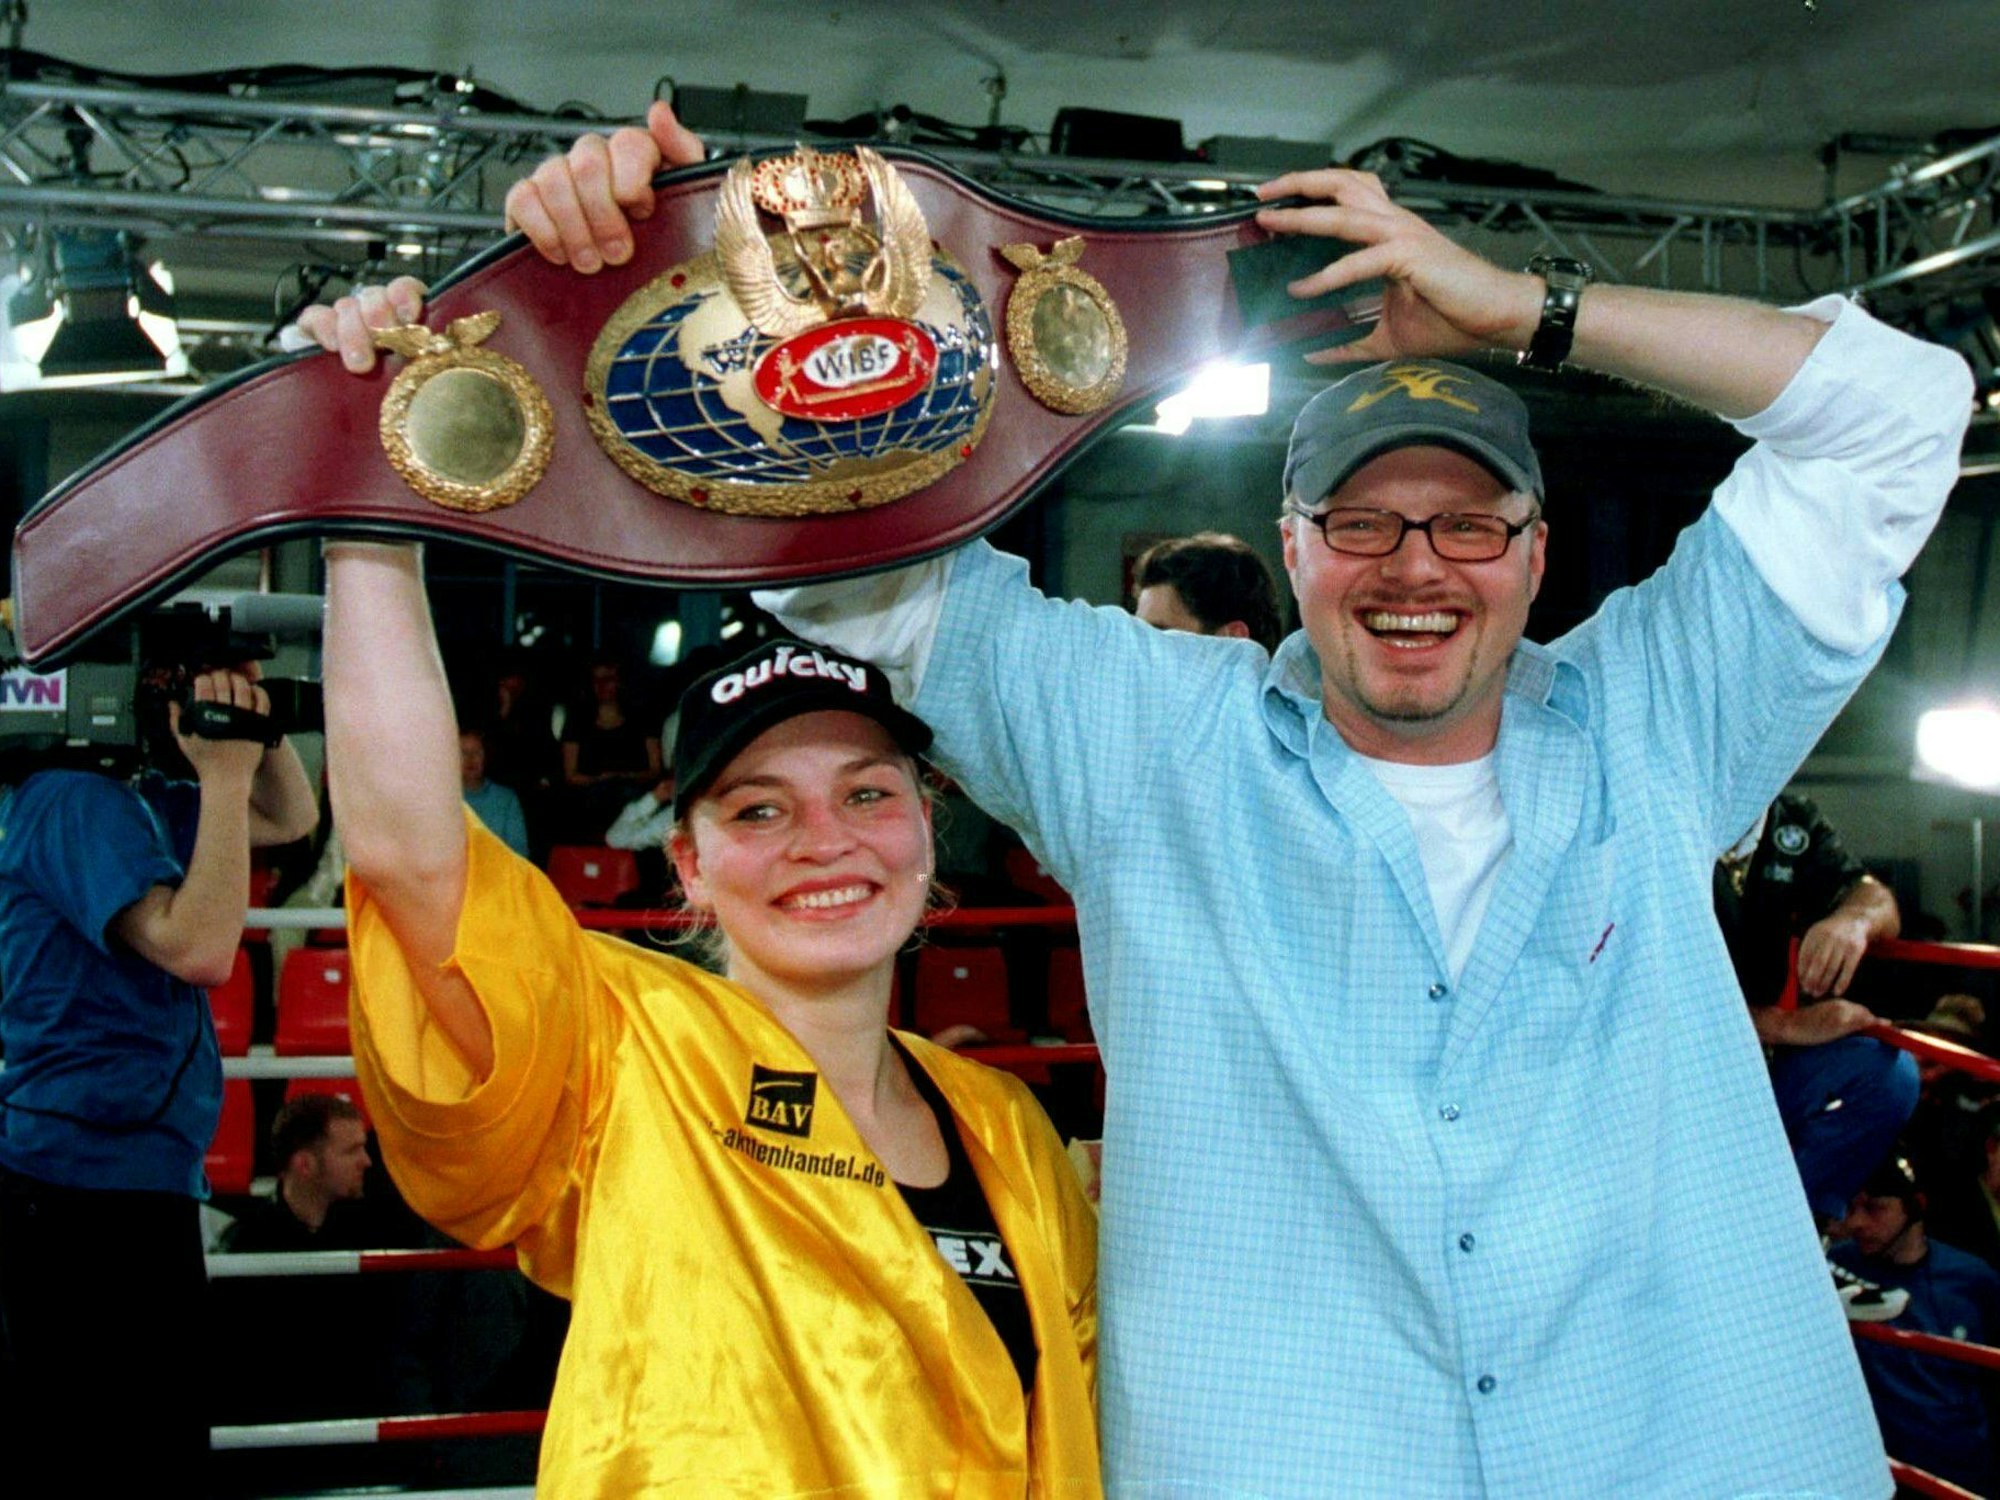 Nur wenige Wochen später jubelte Regina Halmich erneut. Gegen Andrea Blevins aus den USA verteidigte sie am 7. April 2001 durch technischen K.O. in der fünften Runde ihren Weltmeistertitel im Junior-Fliegengewicht zum 22. Mal. Stefan Raab jubelte mit.